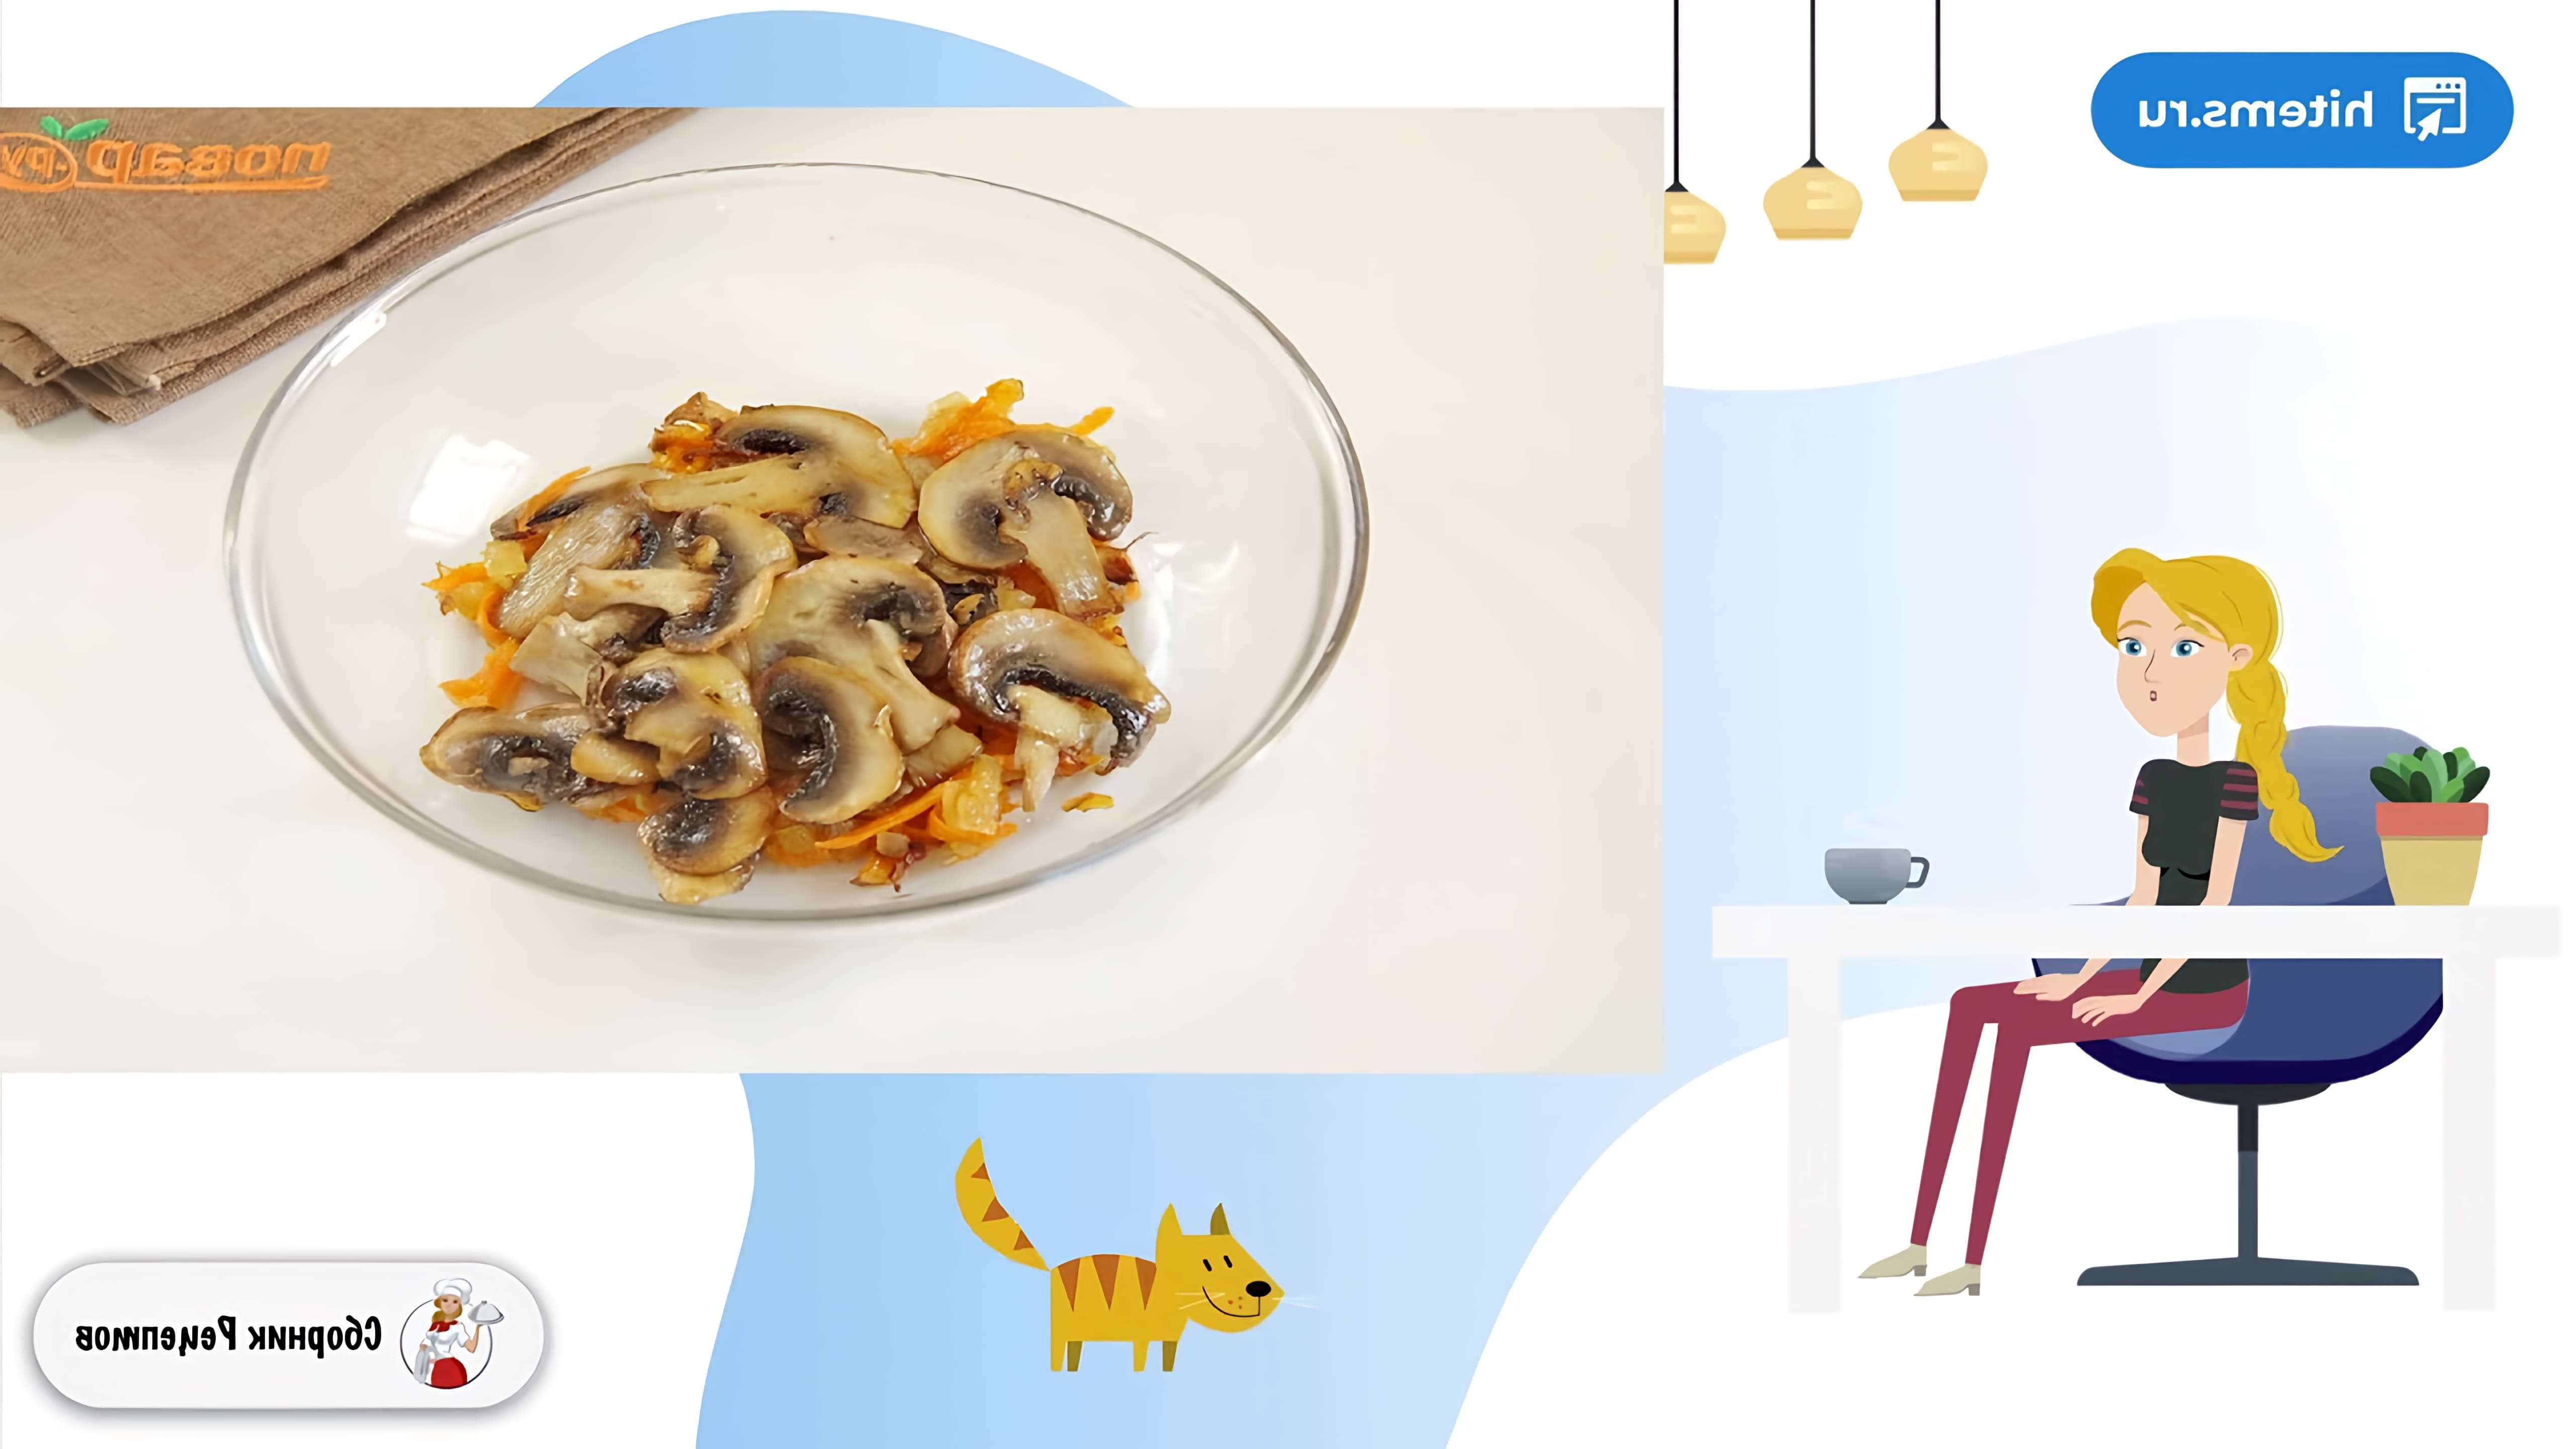 В этом видео демонстрируется рецепт приготовления фаршированных кальмаров с рисом и грибами